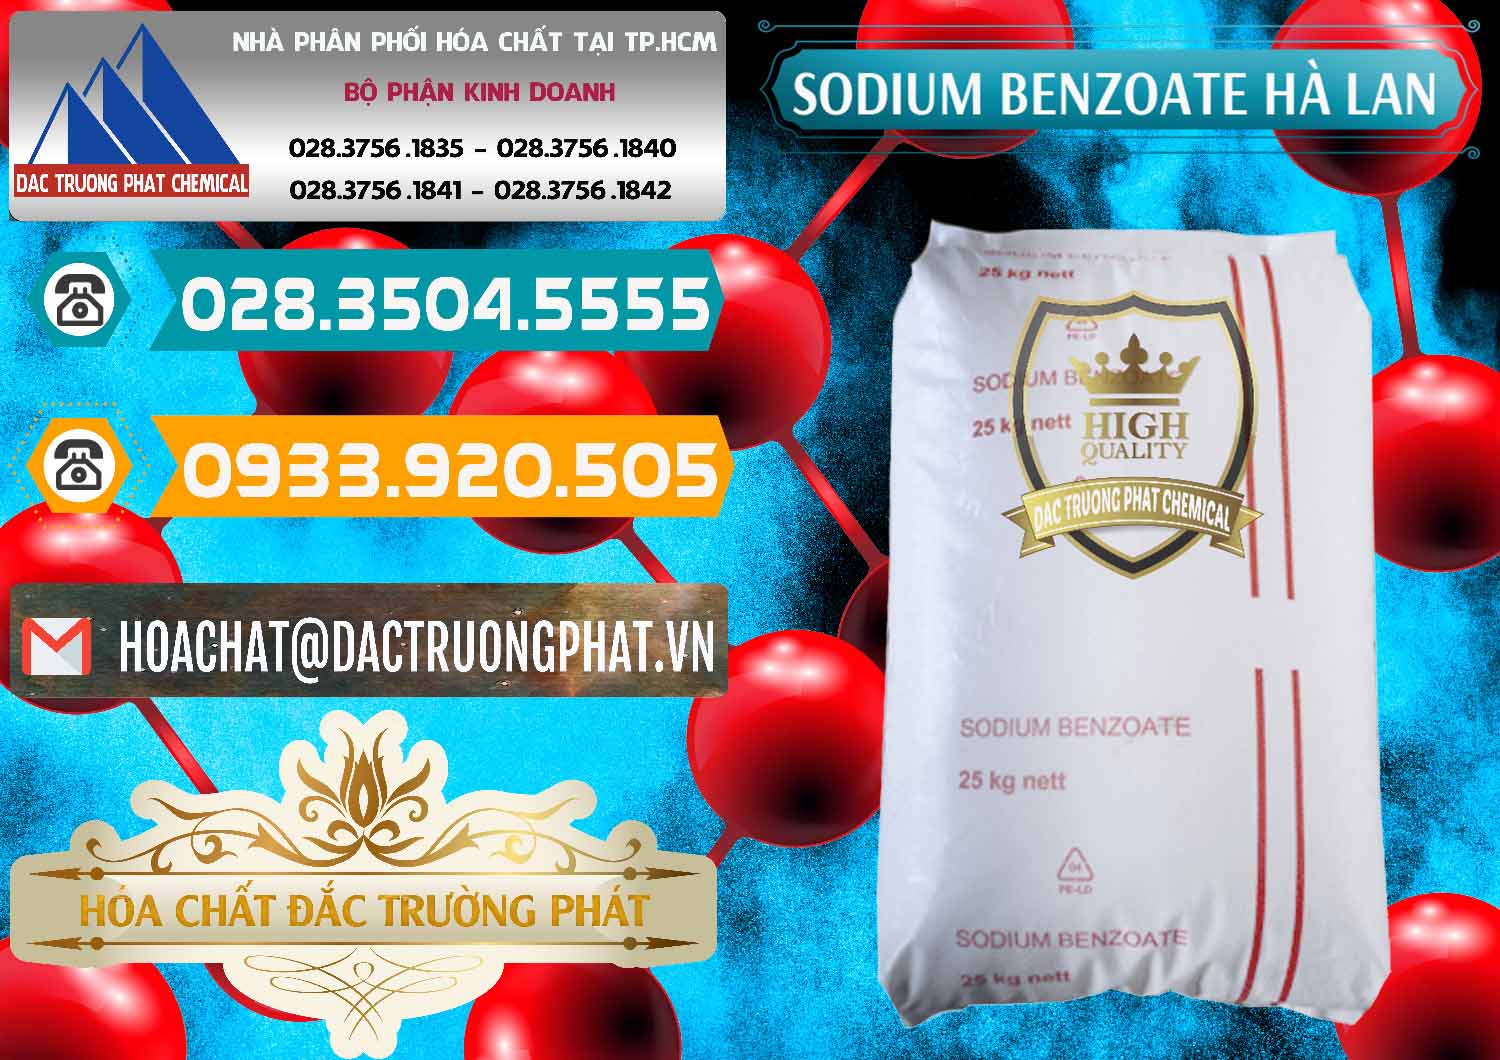 Công ty chuyên cung cấp và bán Sodium Benzoate - Mốc Bột Chữ Cam Hà Lan Netherlands - 0360 - Đơn vị chuyên cung cấp ( kinh doanh ) hóa chất tại TP.HCM - congtyhoachat.vn